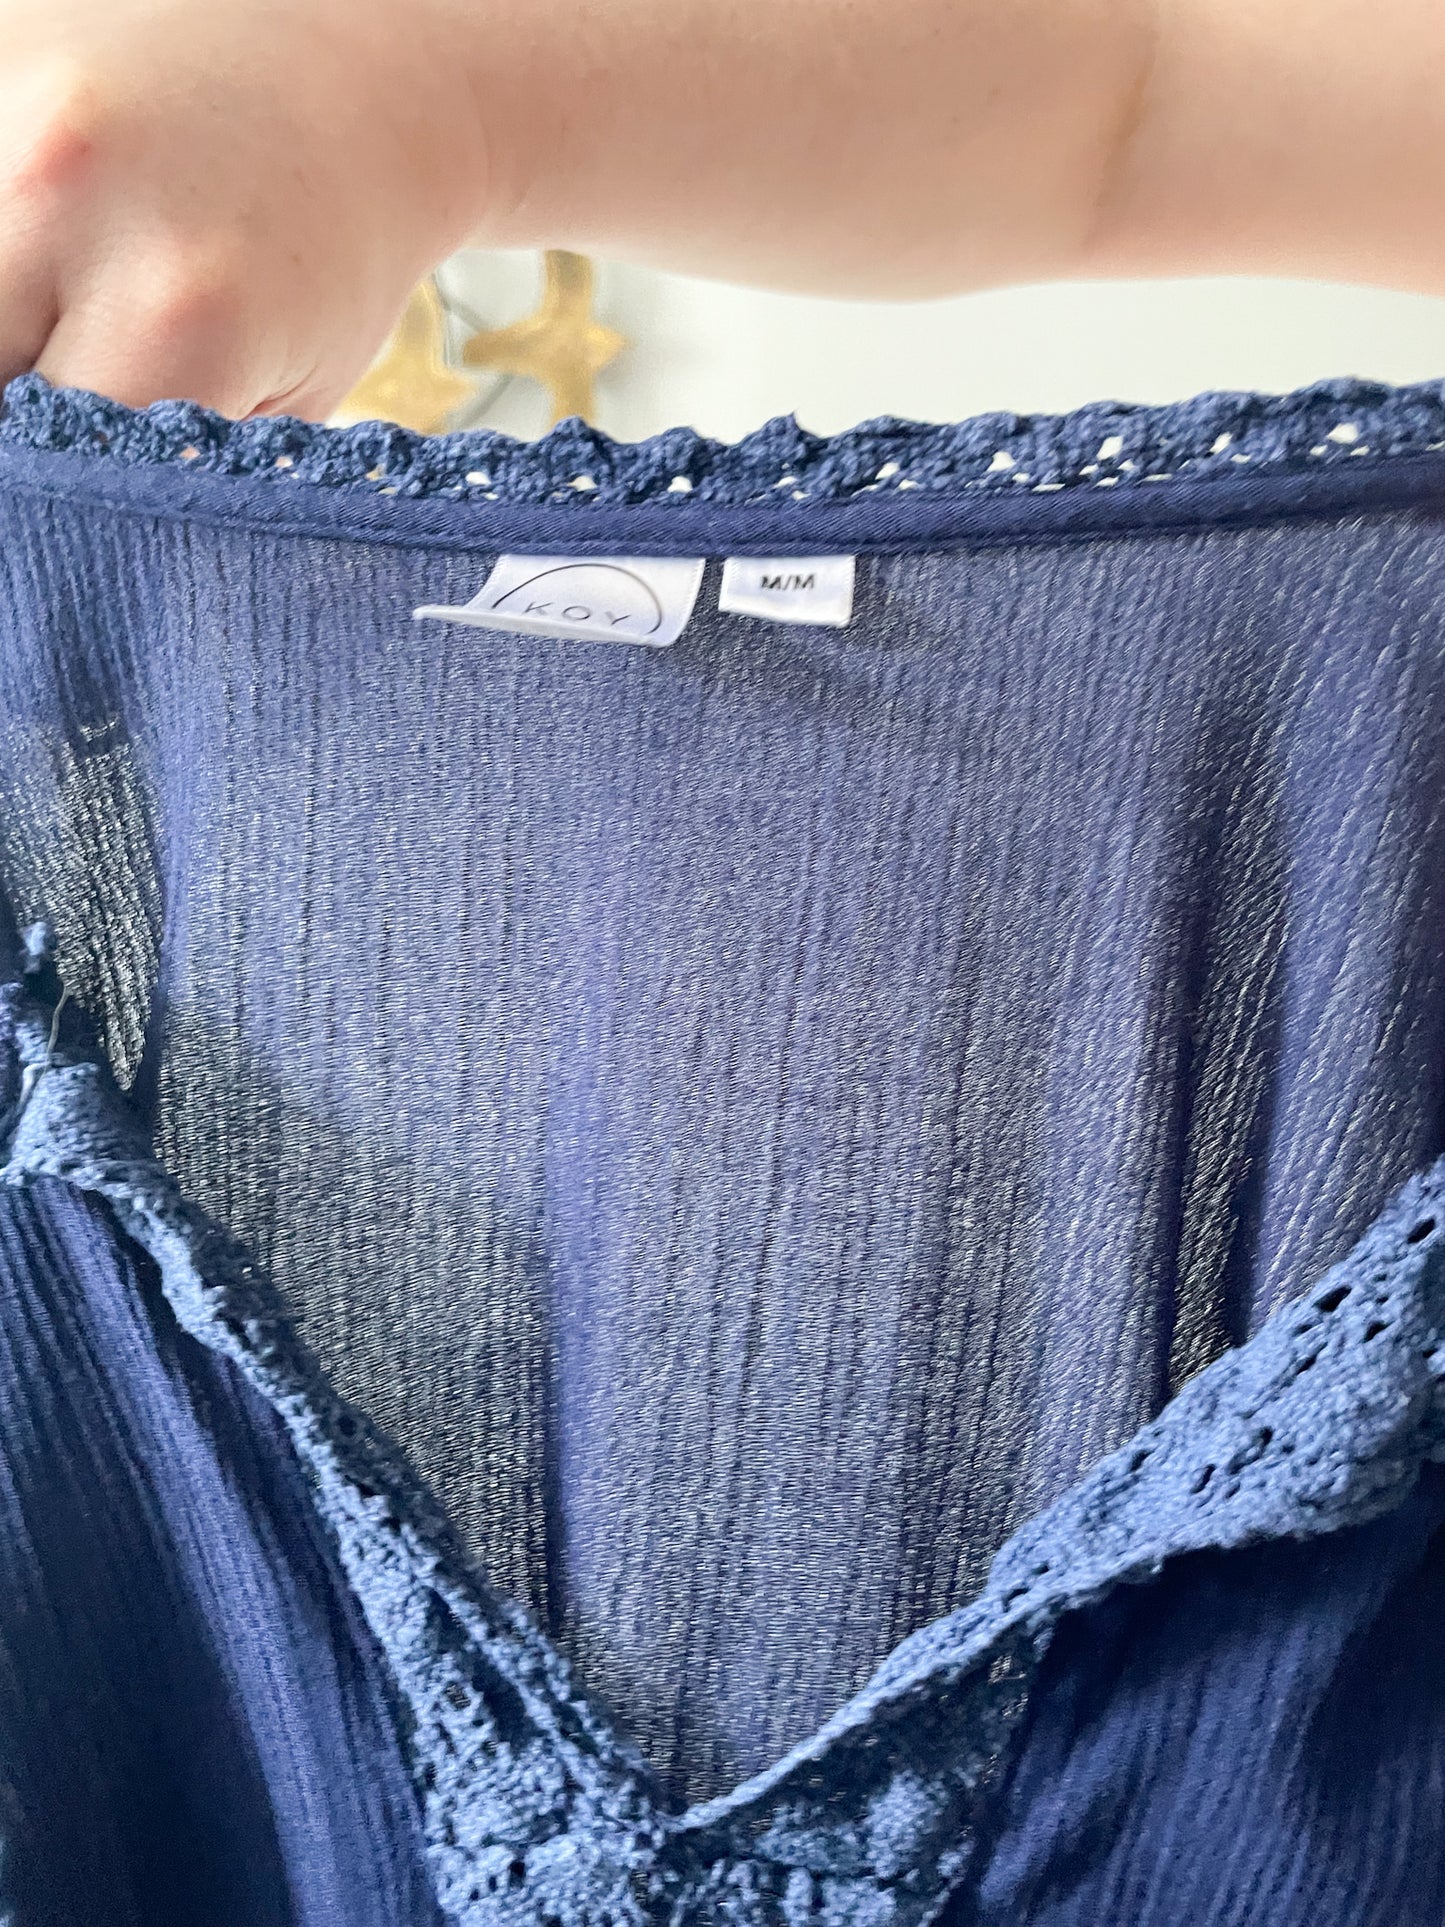 Koy Resort Navy Viscose Crochet Tassel Shift Dress Cover Up - Medium